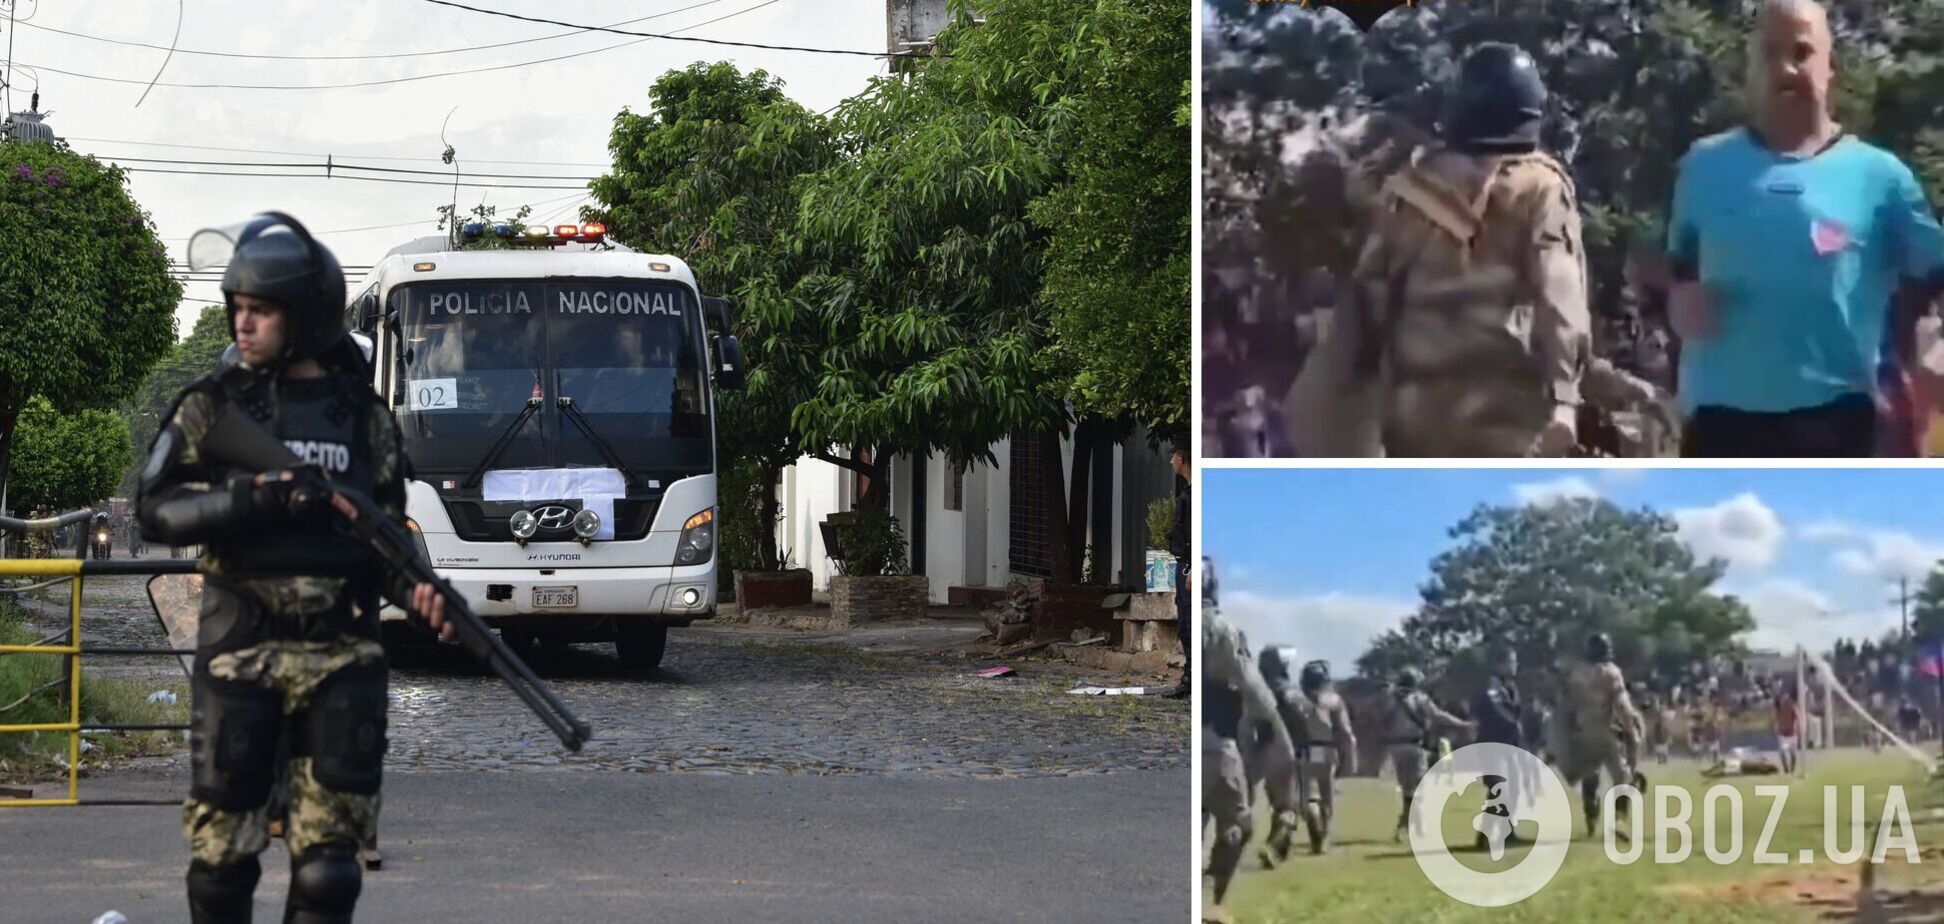 Видео дня. Спецназ начал стрелять по футболистам, которые погнались за арбитром в матче чемпионата Парагвая